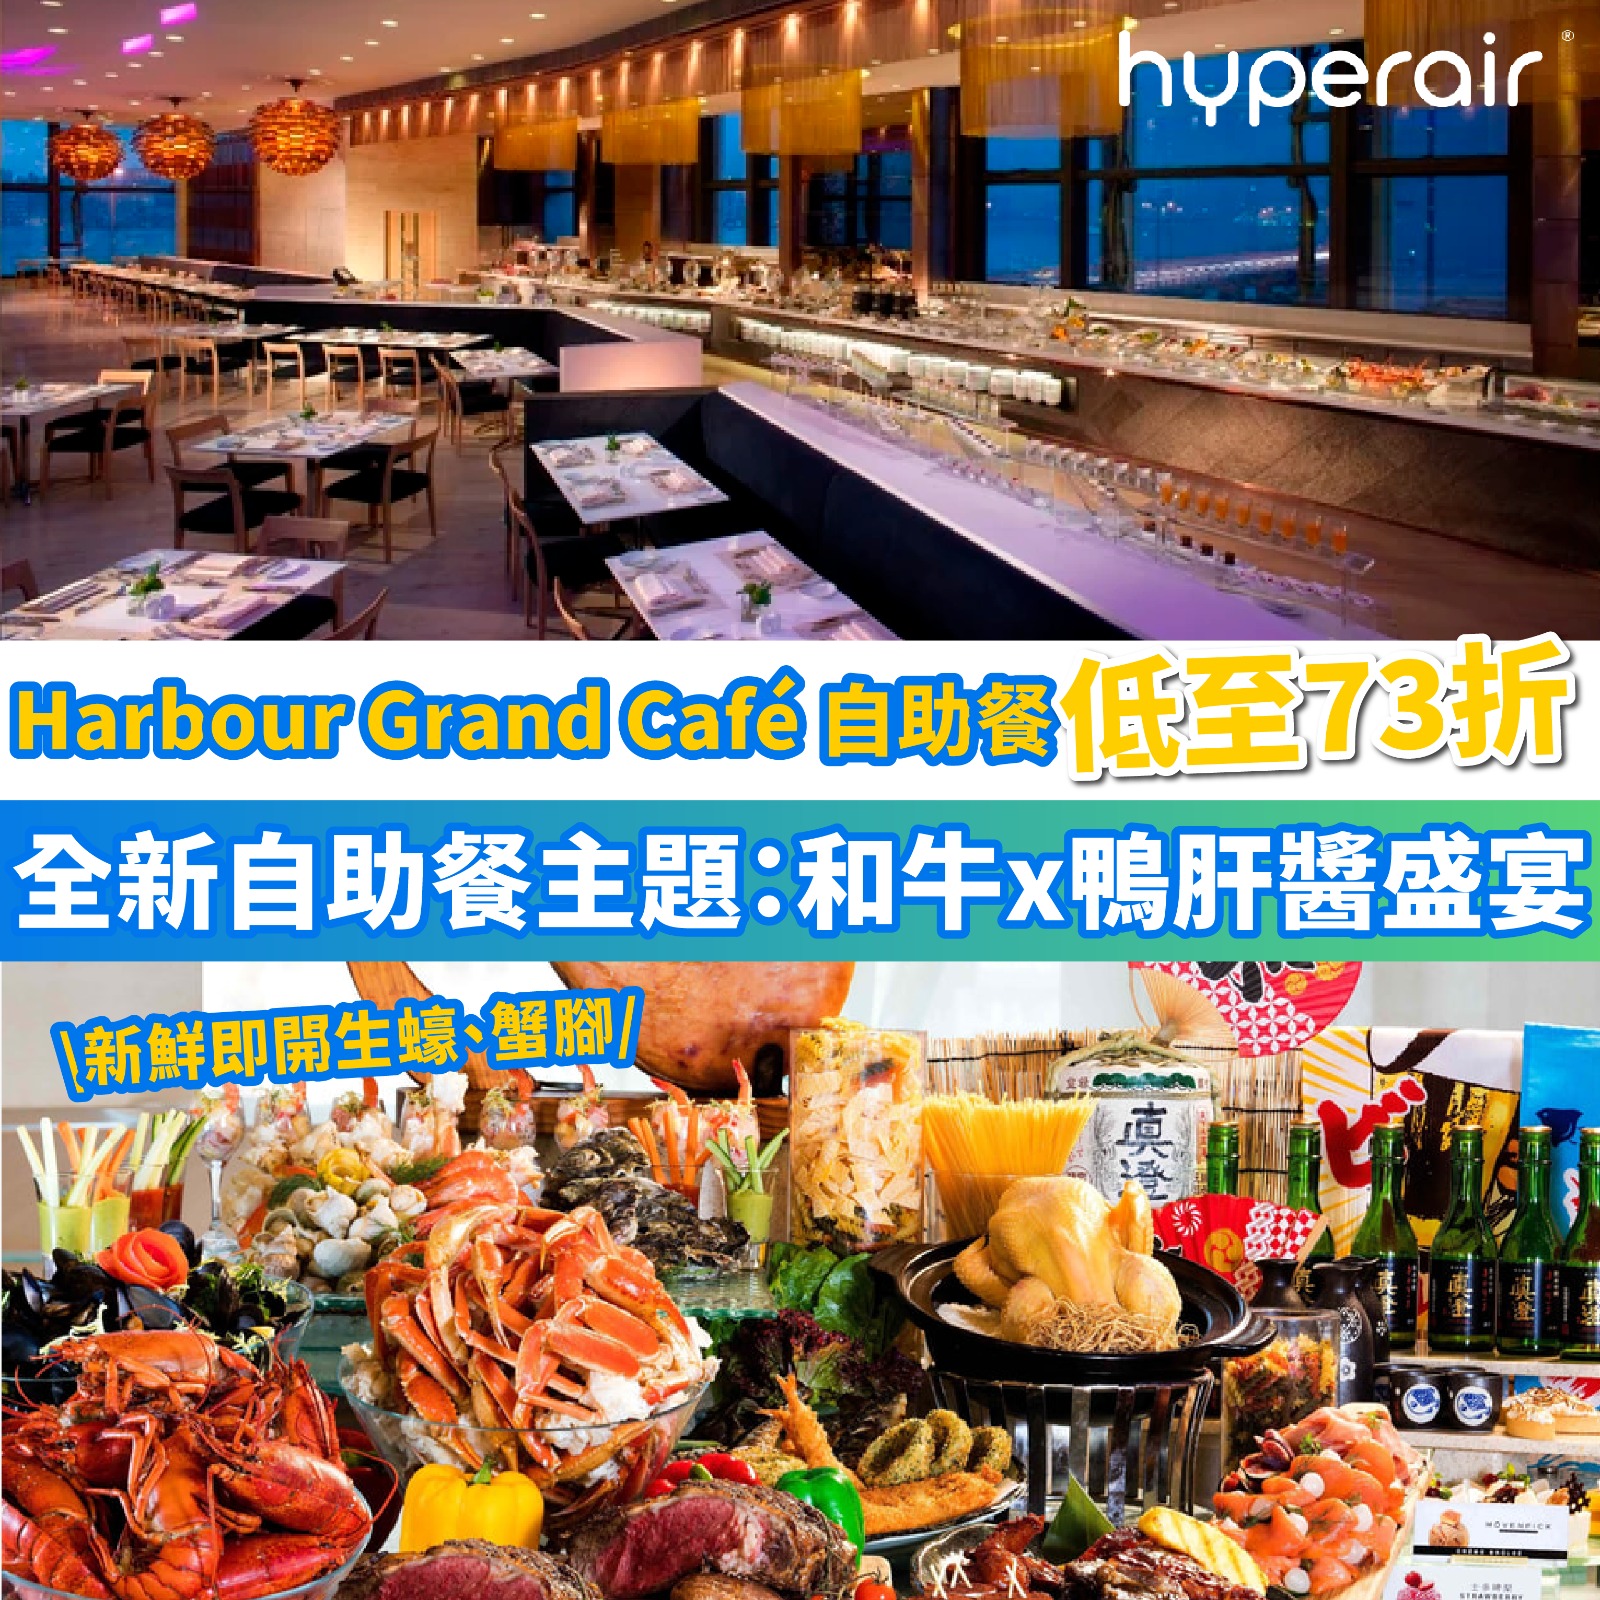 3月16日 9PM 港島海逸君綽酒店 自助餐，必搶低至73折優惠